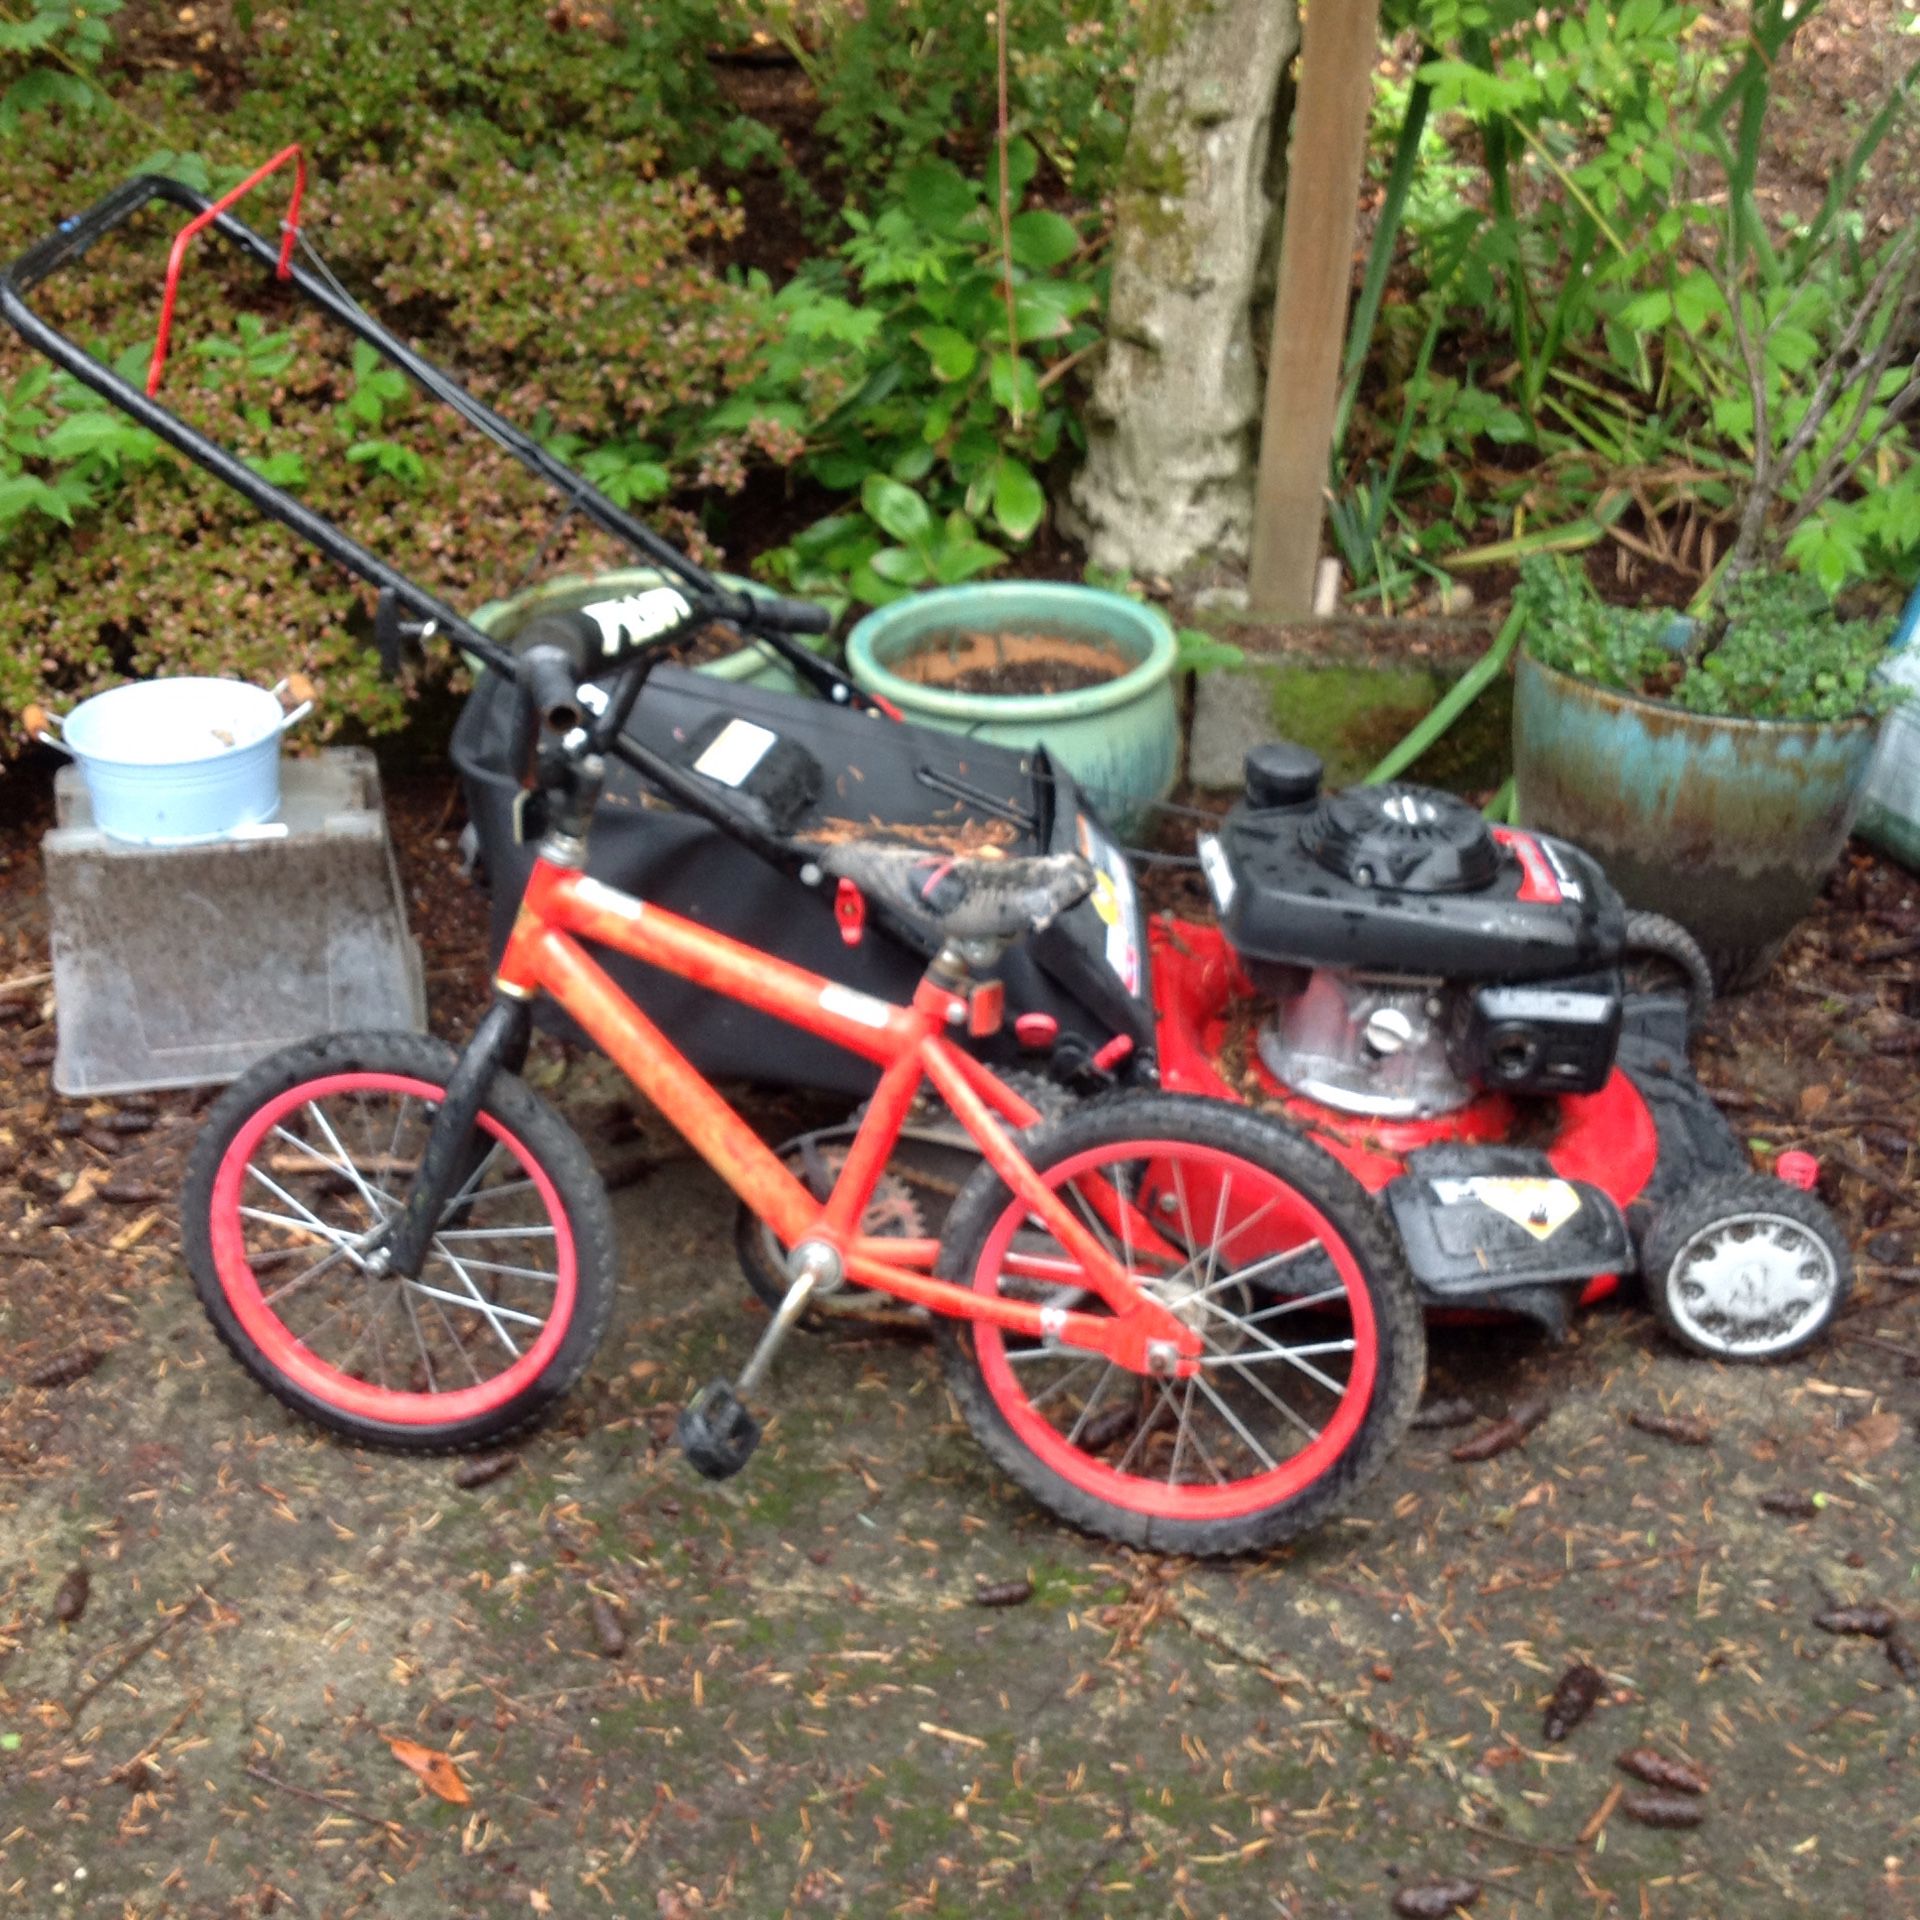 Mower and tiny bike